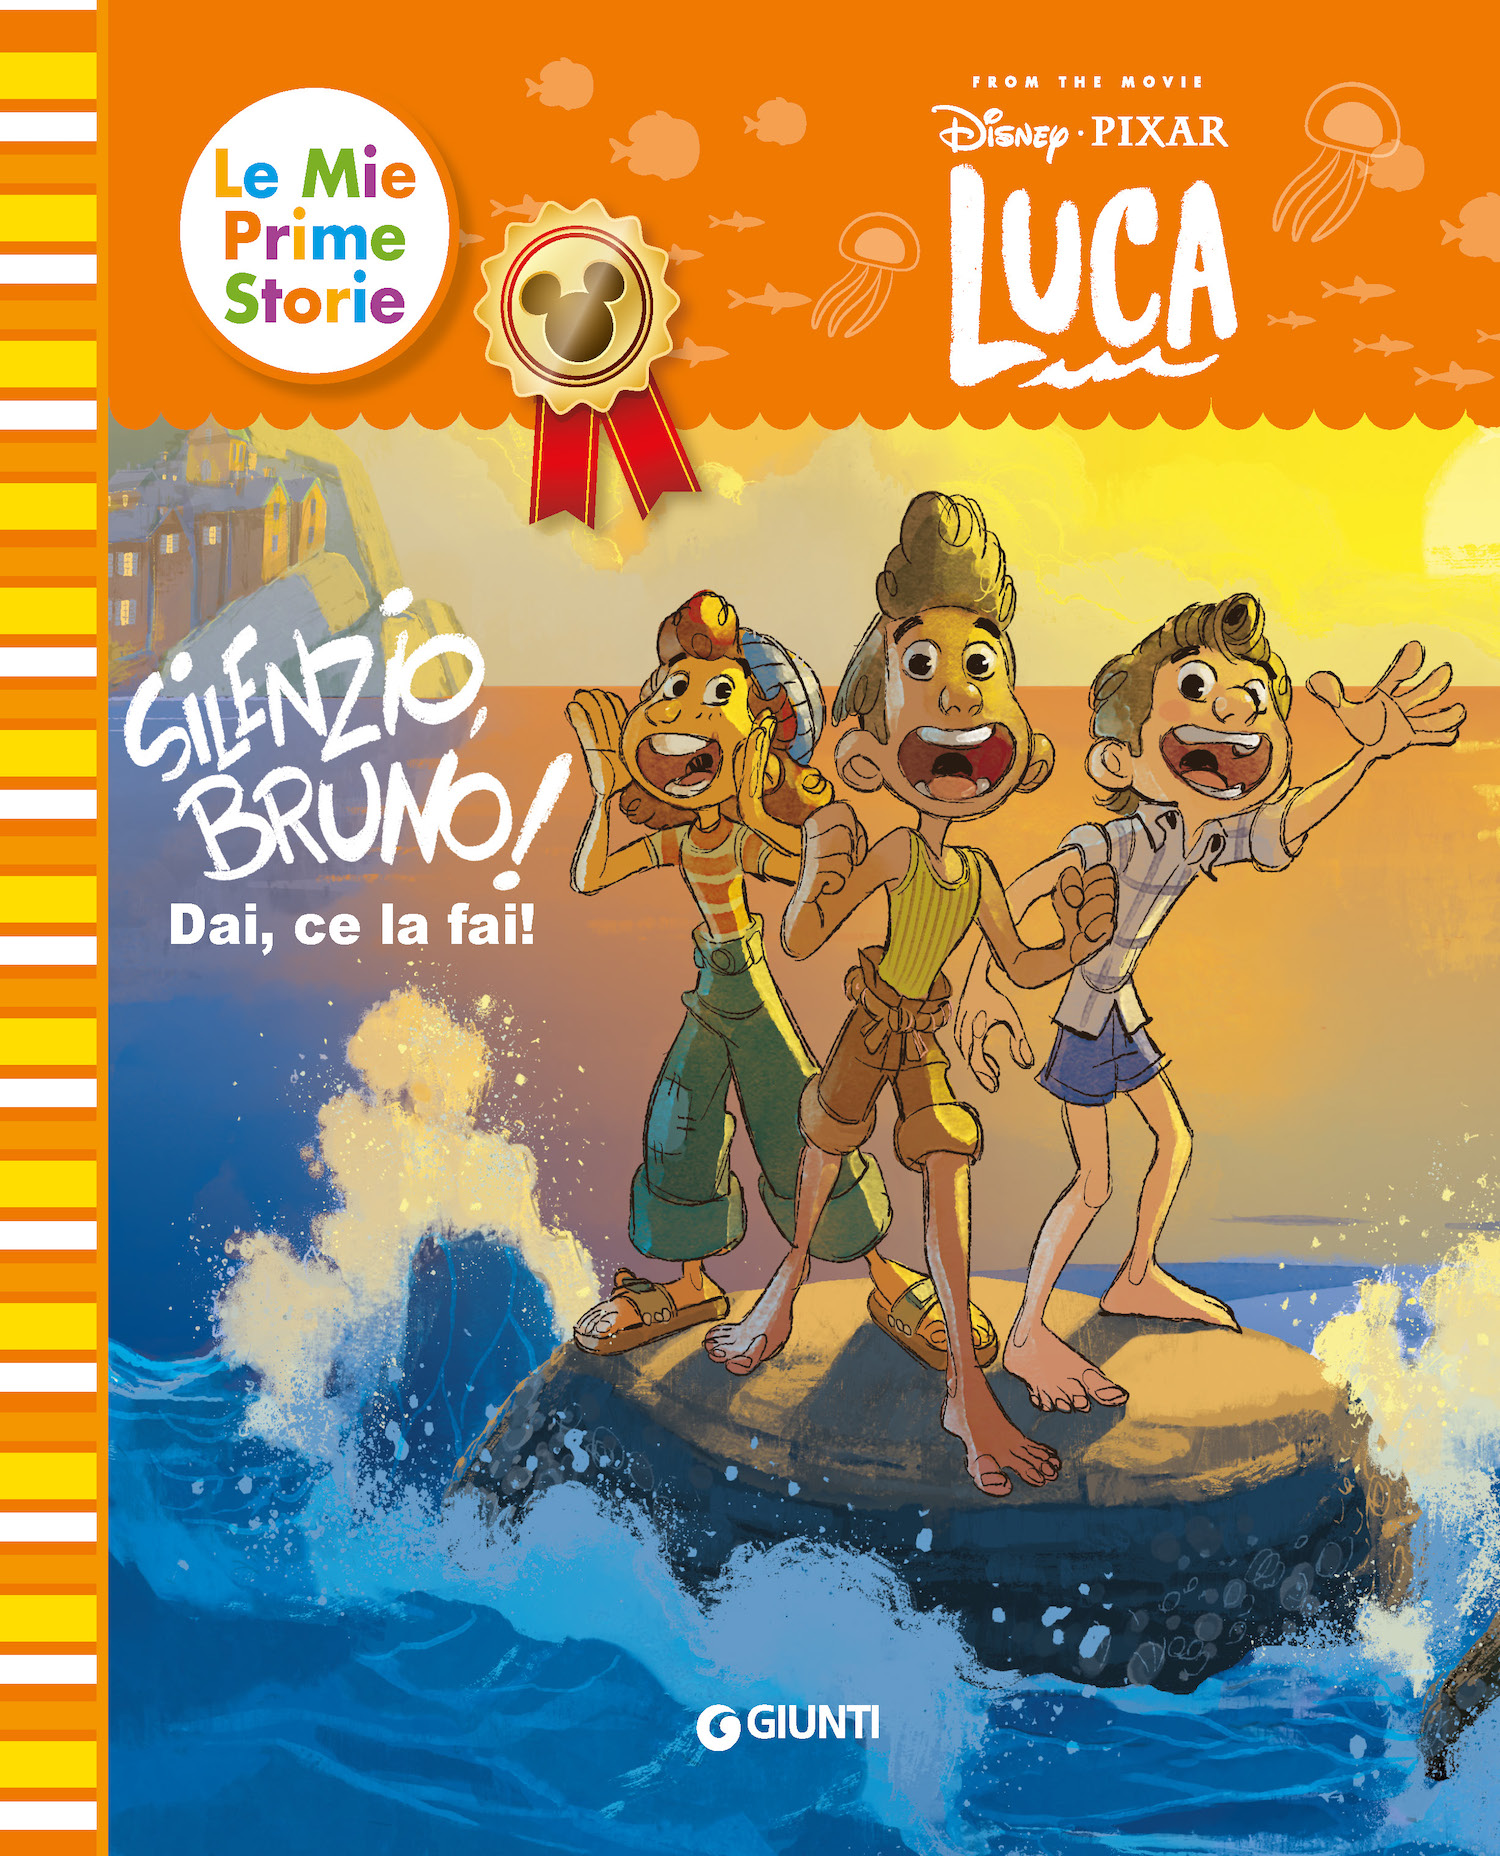 Silenzio Bruno! Luca Disney/Pixar - Le mie prime storie